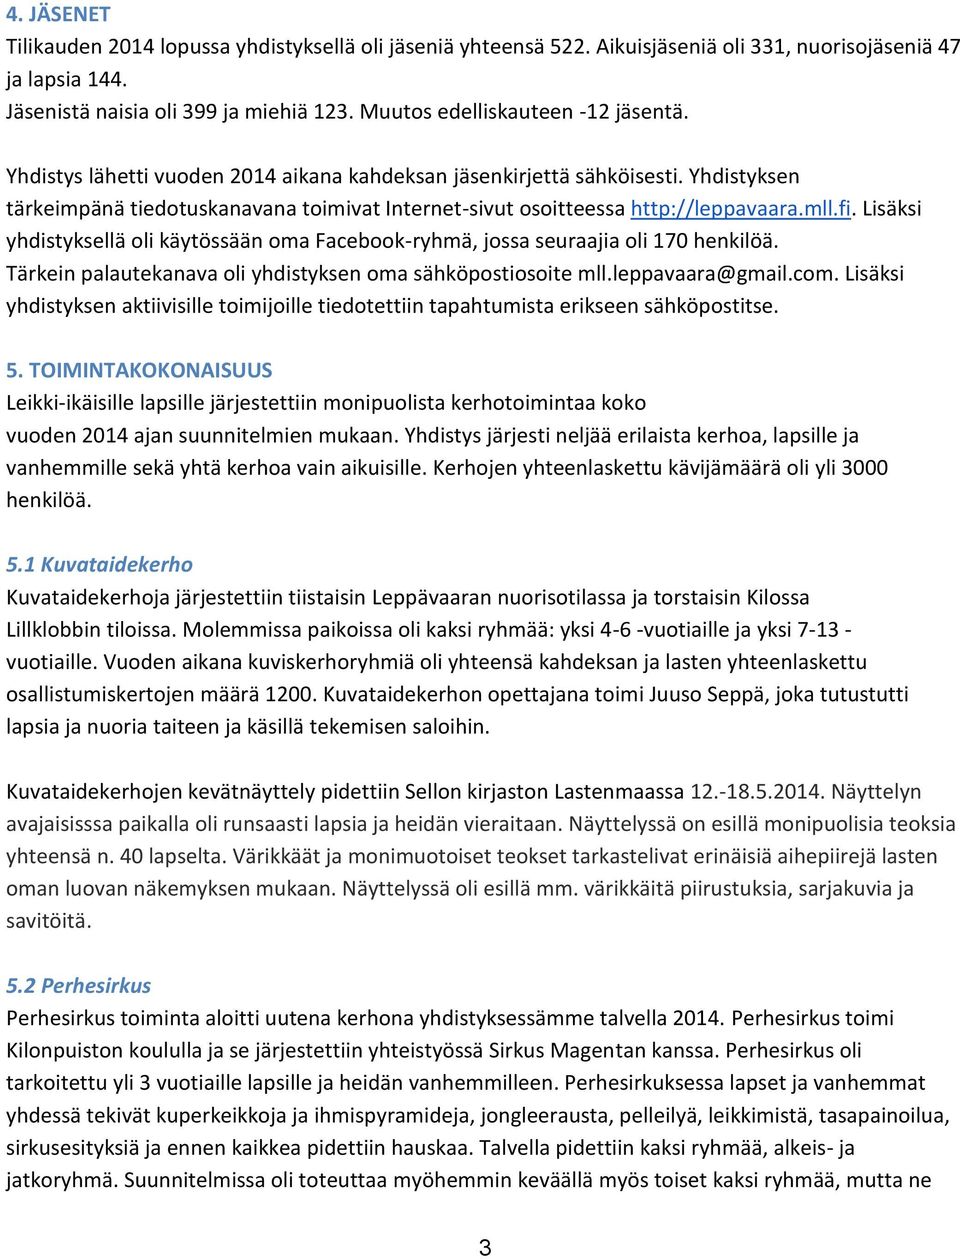 Yhdistyksen tärkeimpänä tiedotuskanavana toimivat Internet-sivut osoitteessa http://leppavaara.mll.fi. Lisäksi yhdistyksellä oli käytössään oma Facebook-ryhmä, jossa seuraajia oli 170 henkilöä.